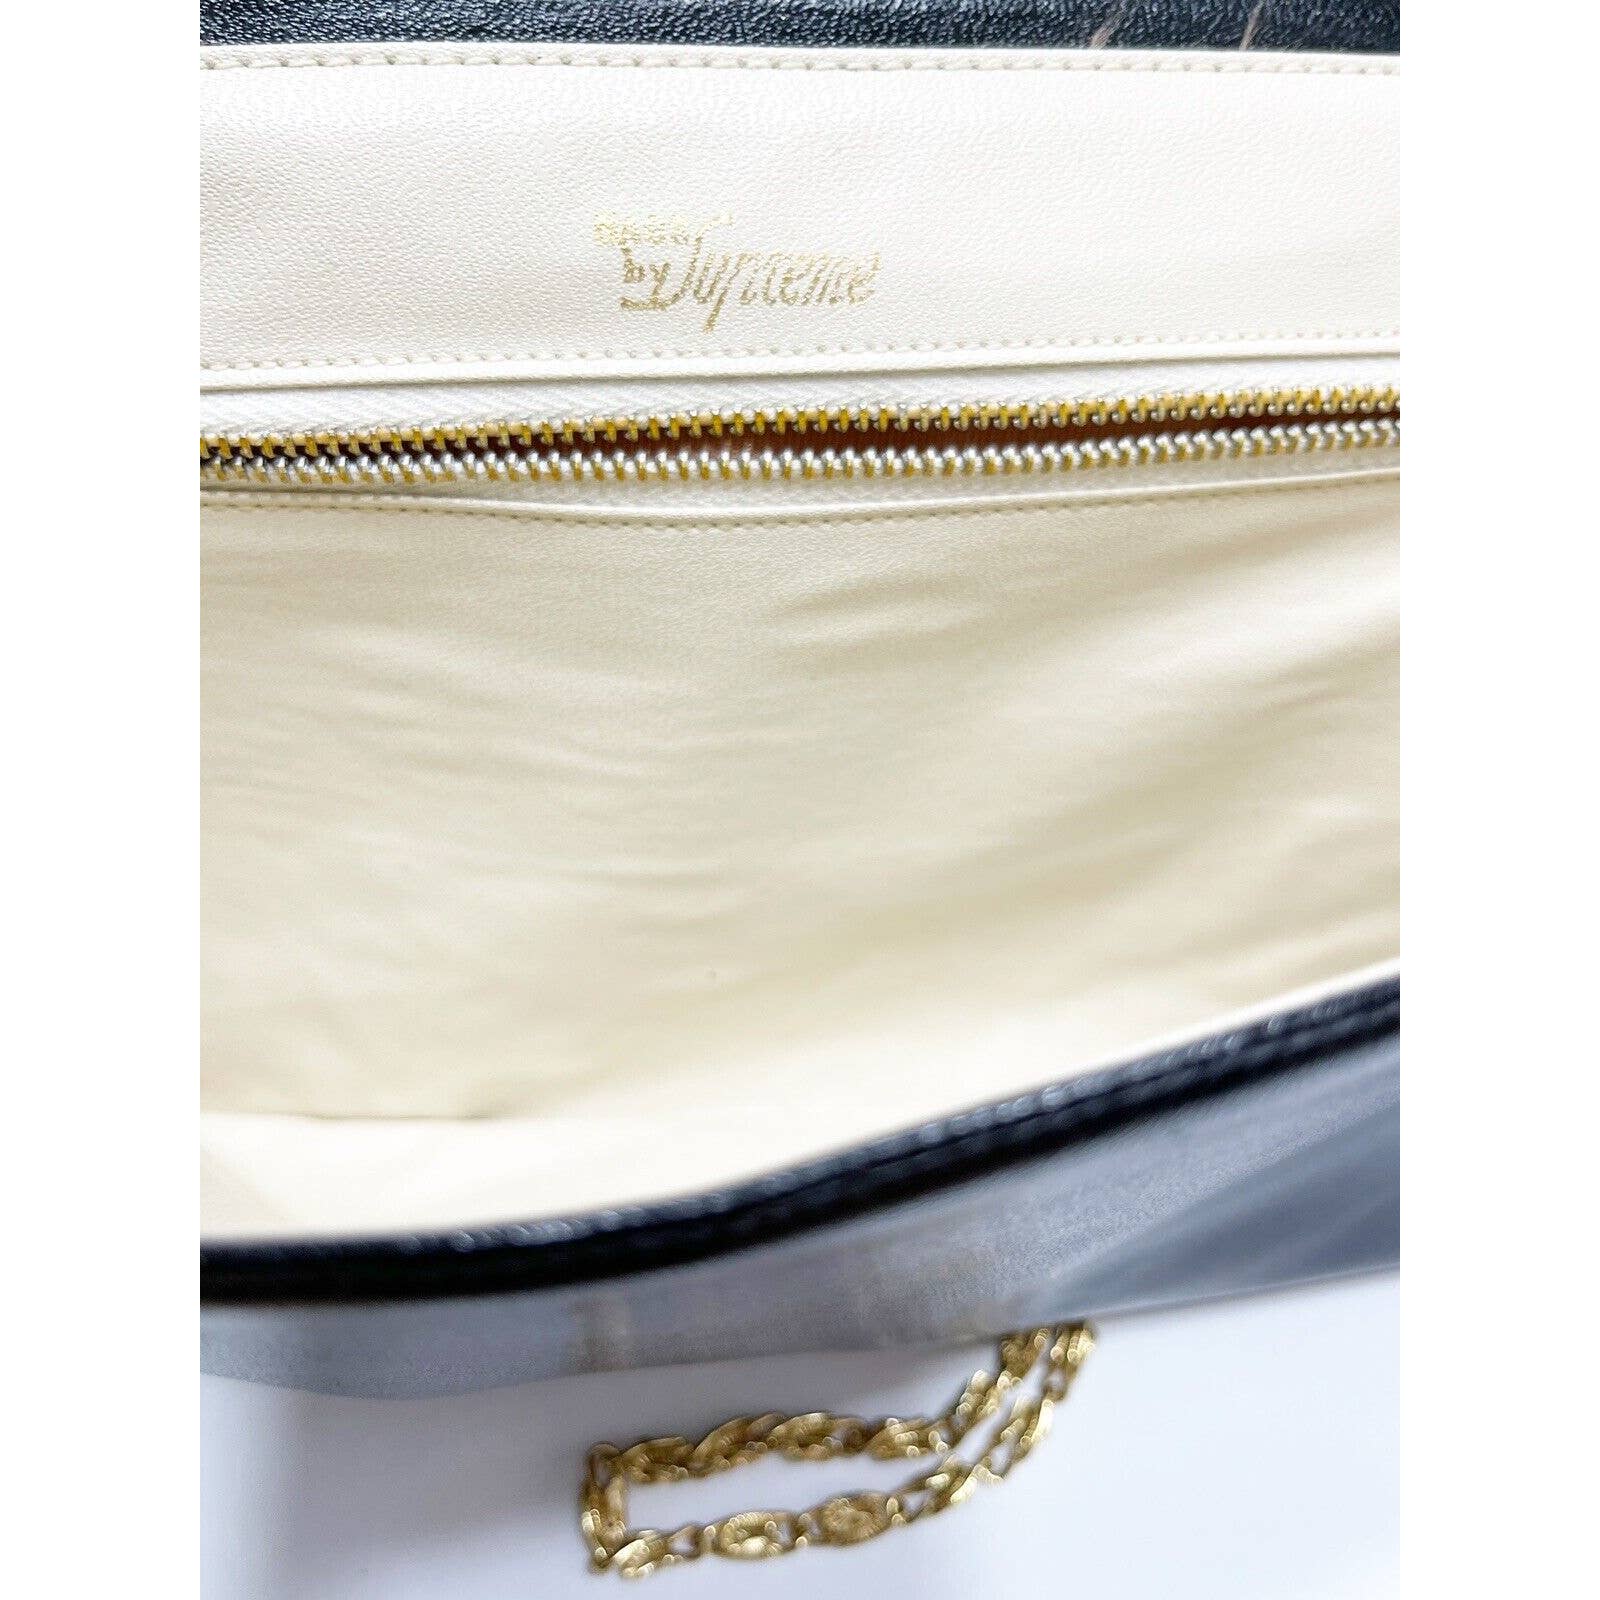 Bags by SupremeBags By Supreme Patchwork Snakeskin Black Clutch Shoulder Handbag RARE Excellent - Black Dog Vintage